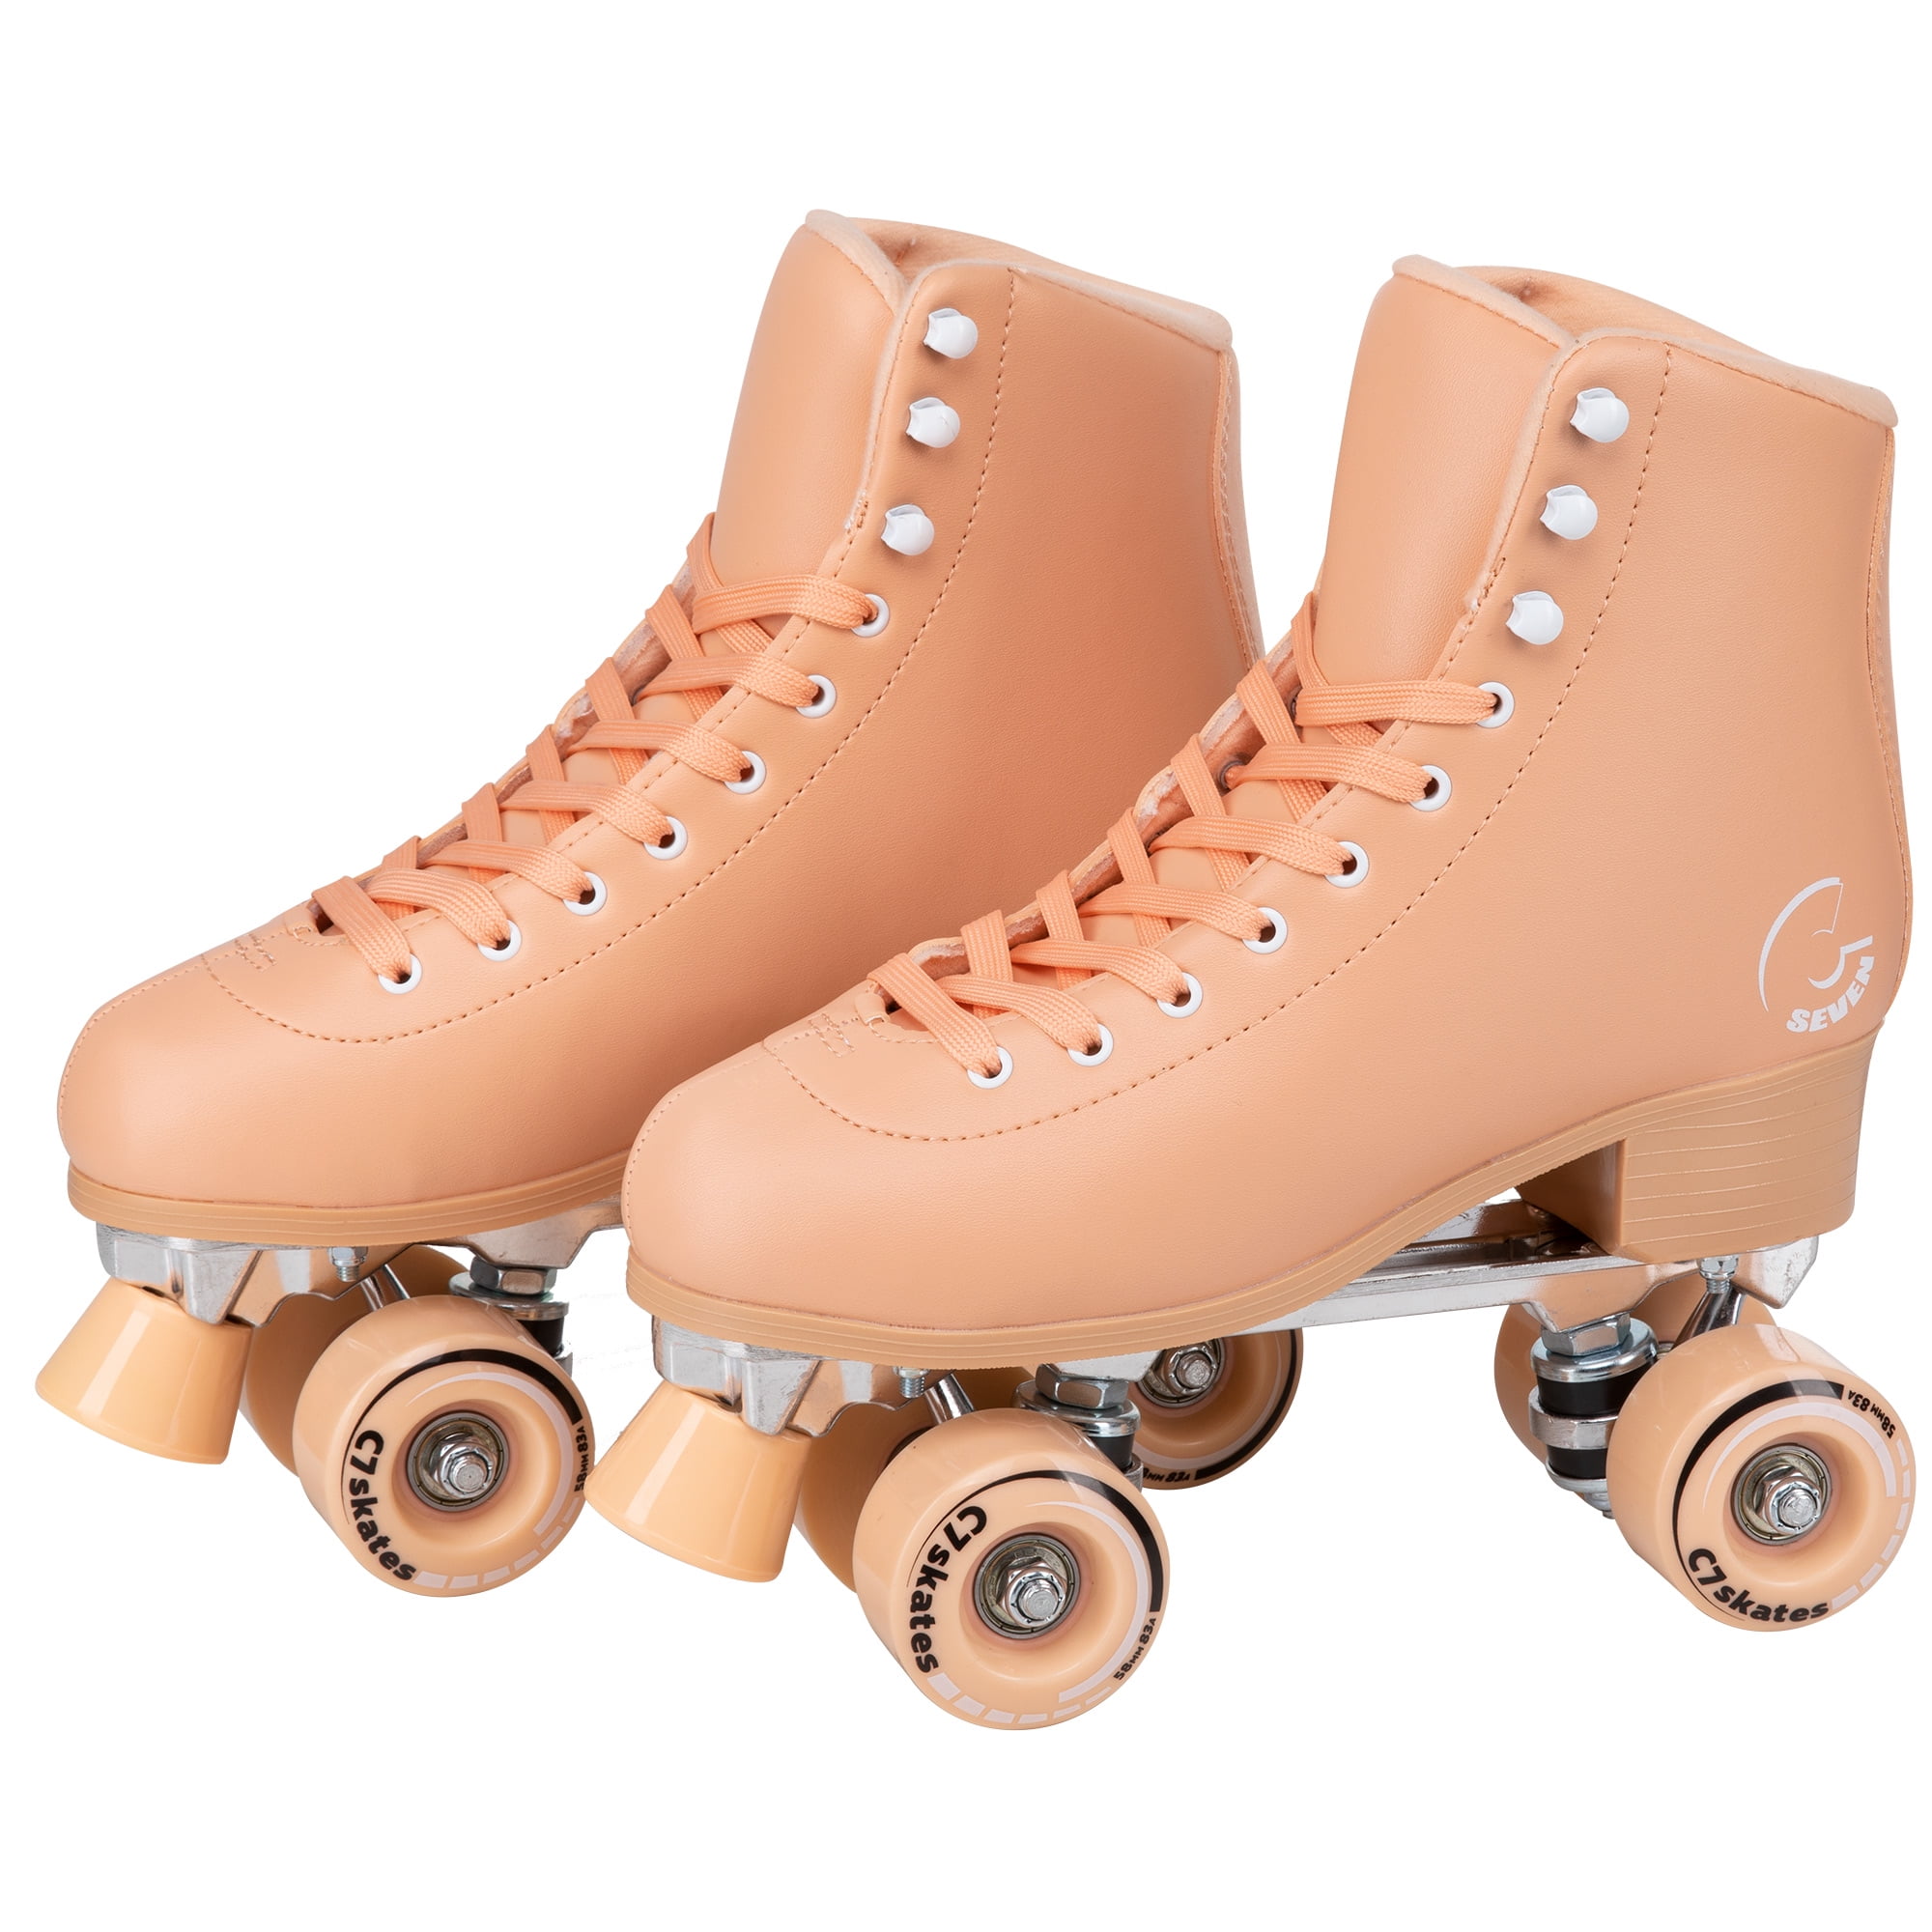 Details about   Roller Skates for Girls 4 Sizes Adjustable Roller Skates Medium Size 13C-3Y US 